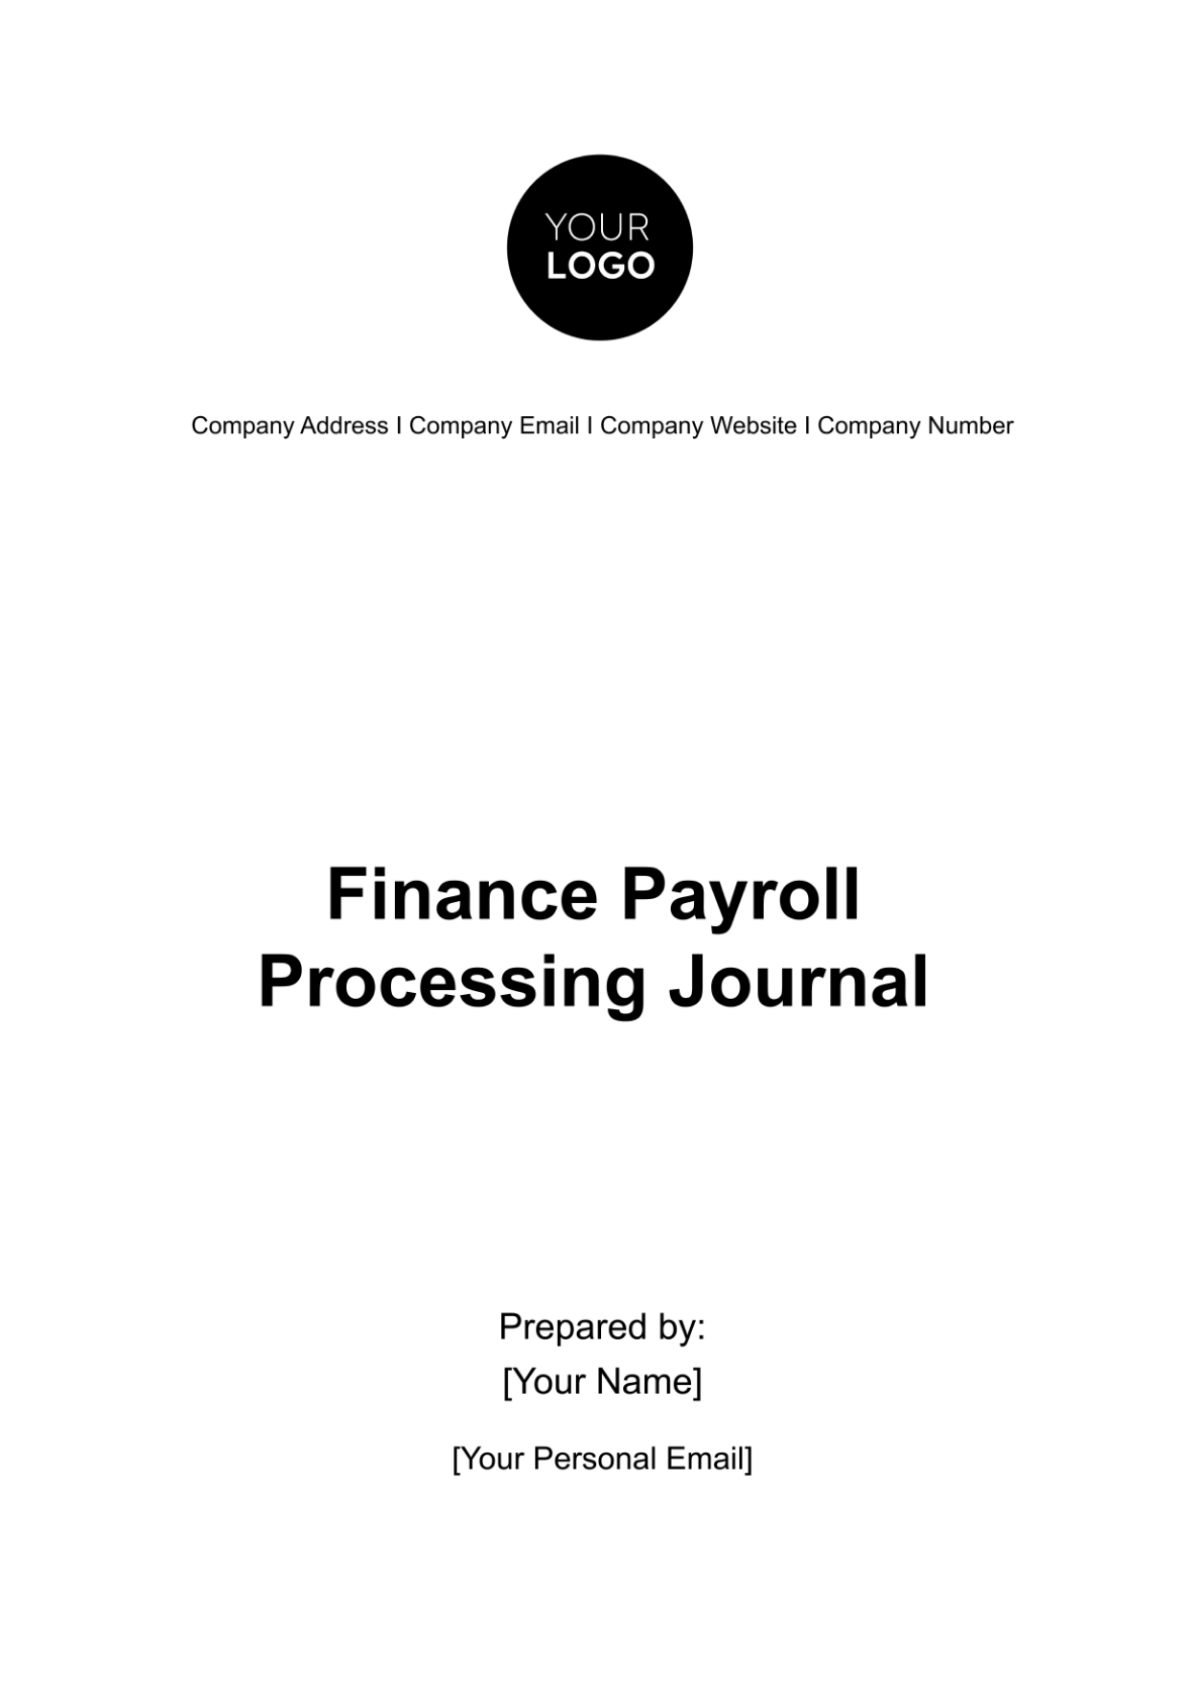 Finance Payroll Processing Journal Template